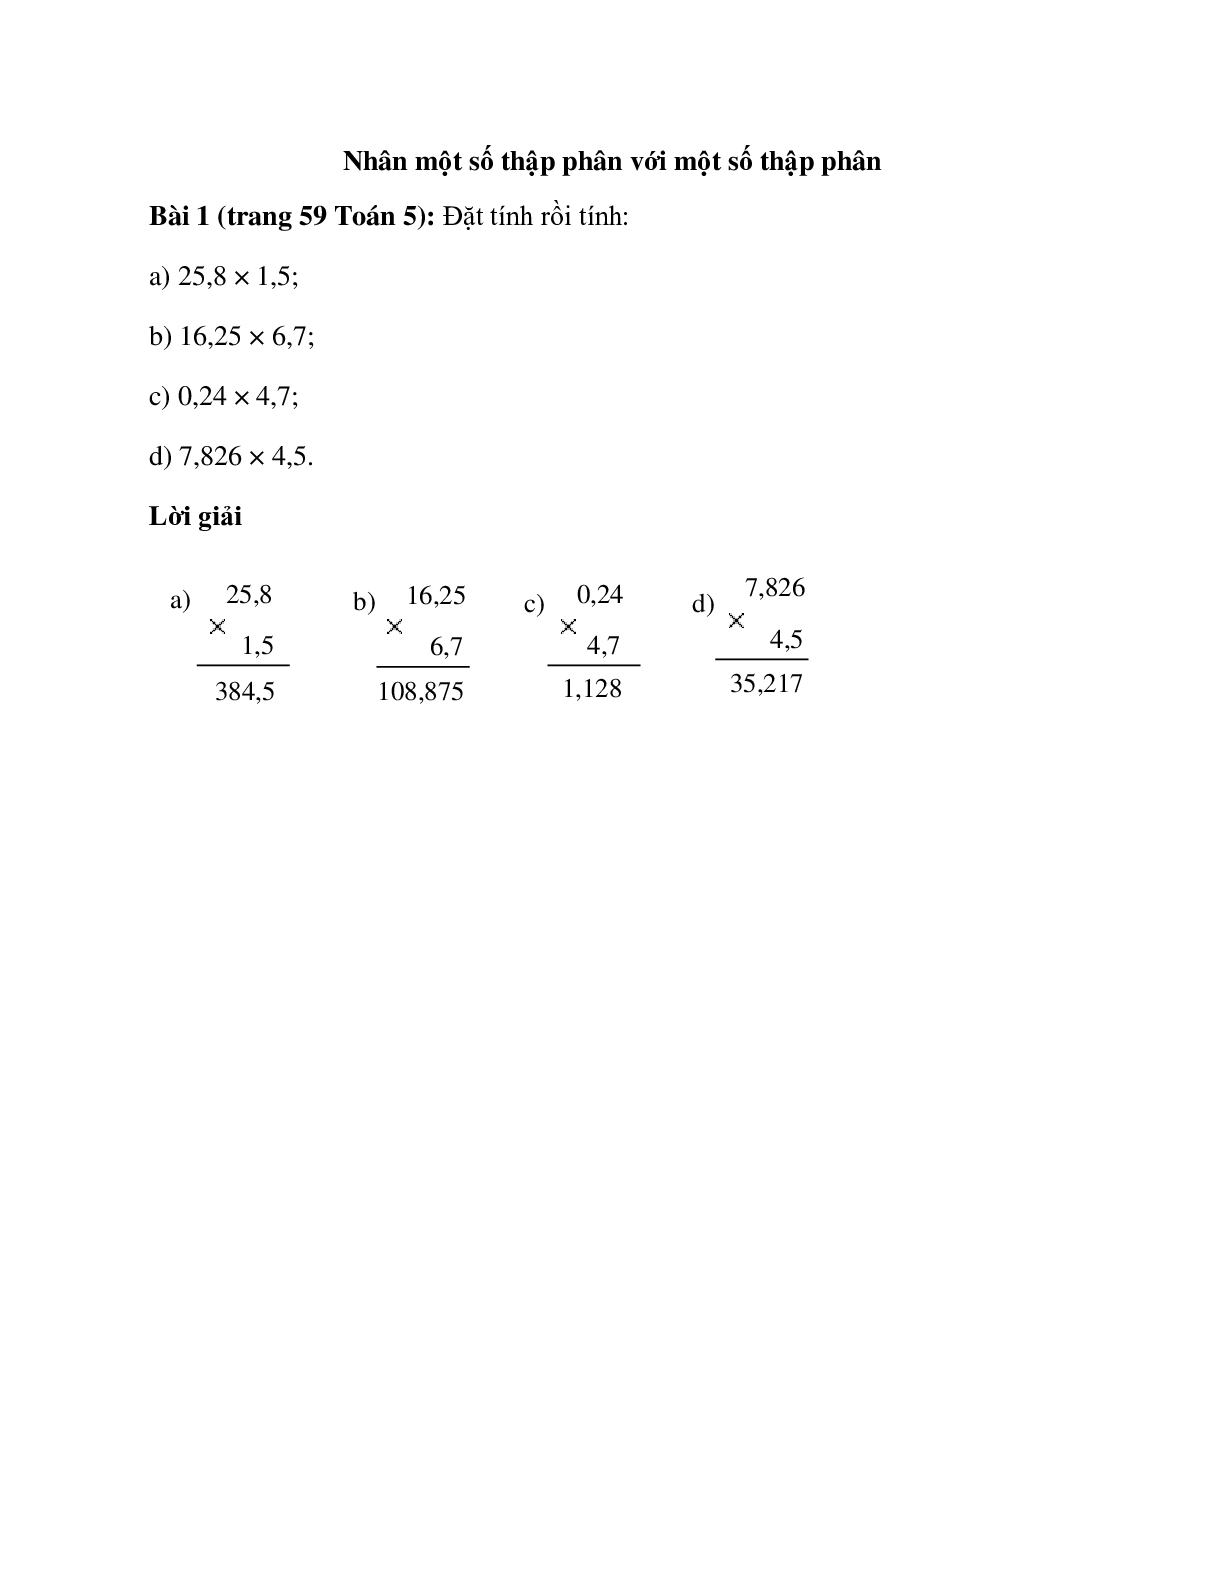 Đặt tính rồi tính: 25,8 × 1,5 (trang 1)